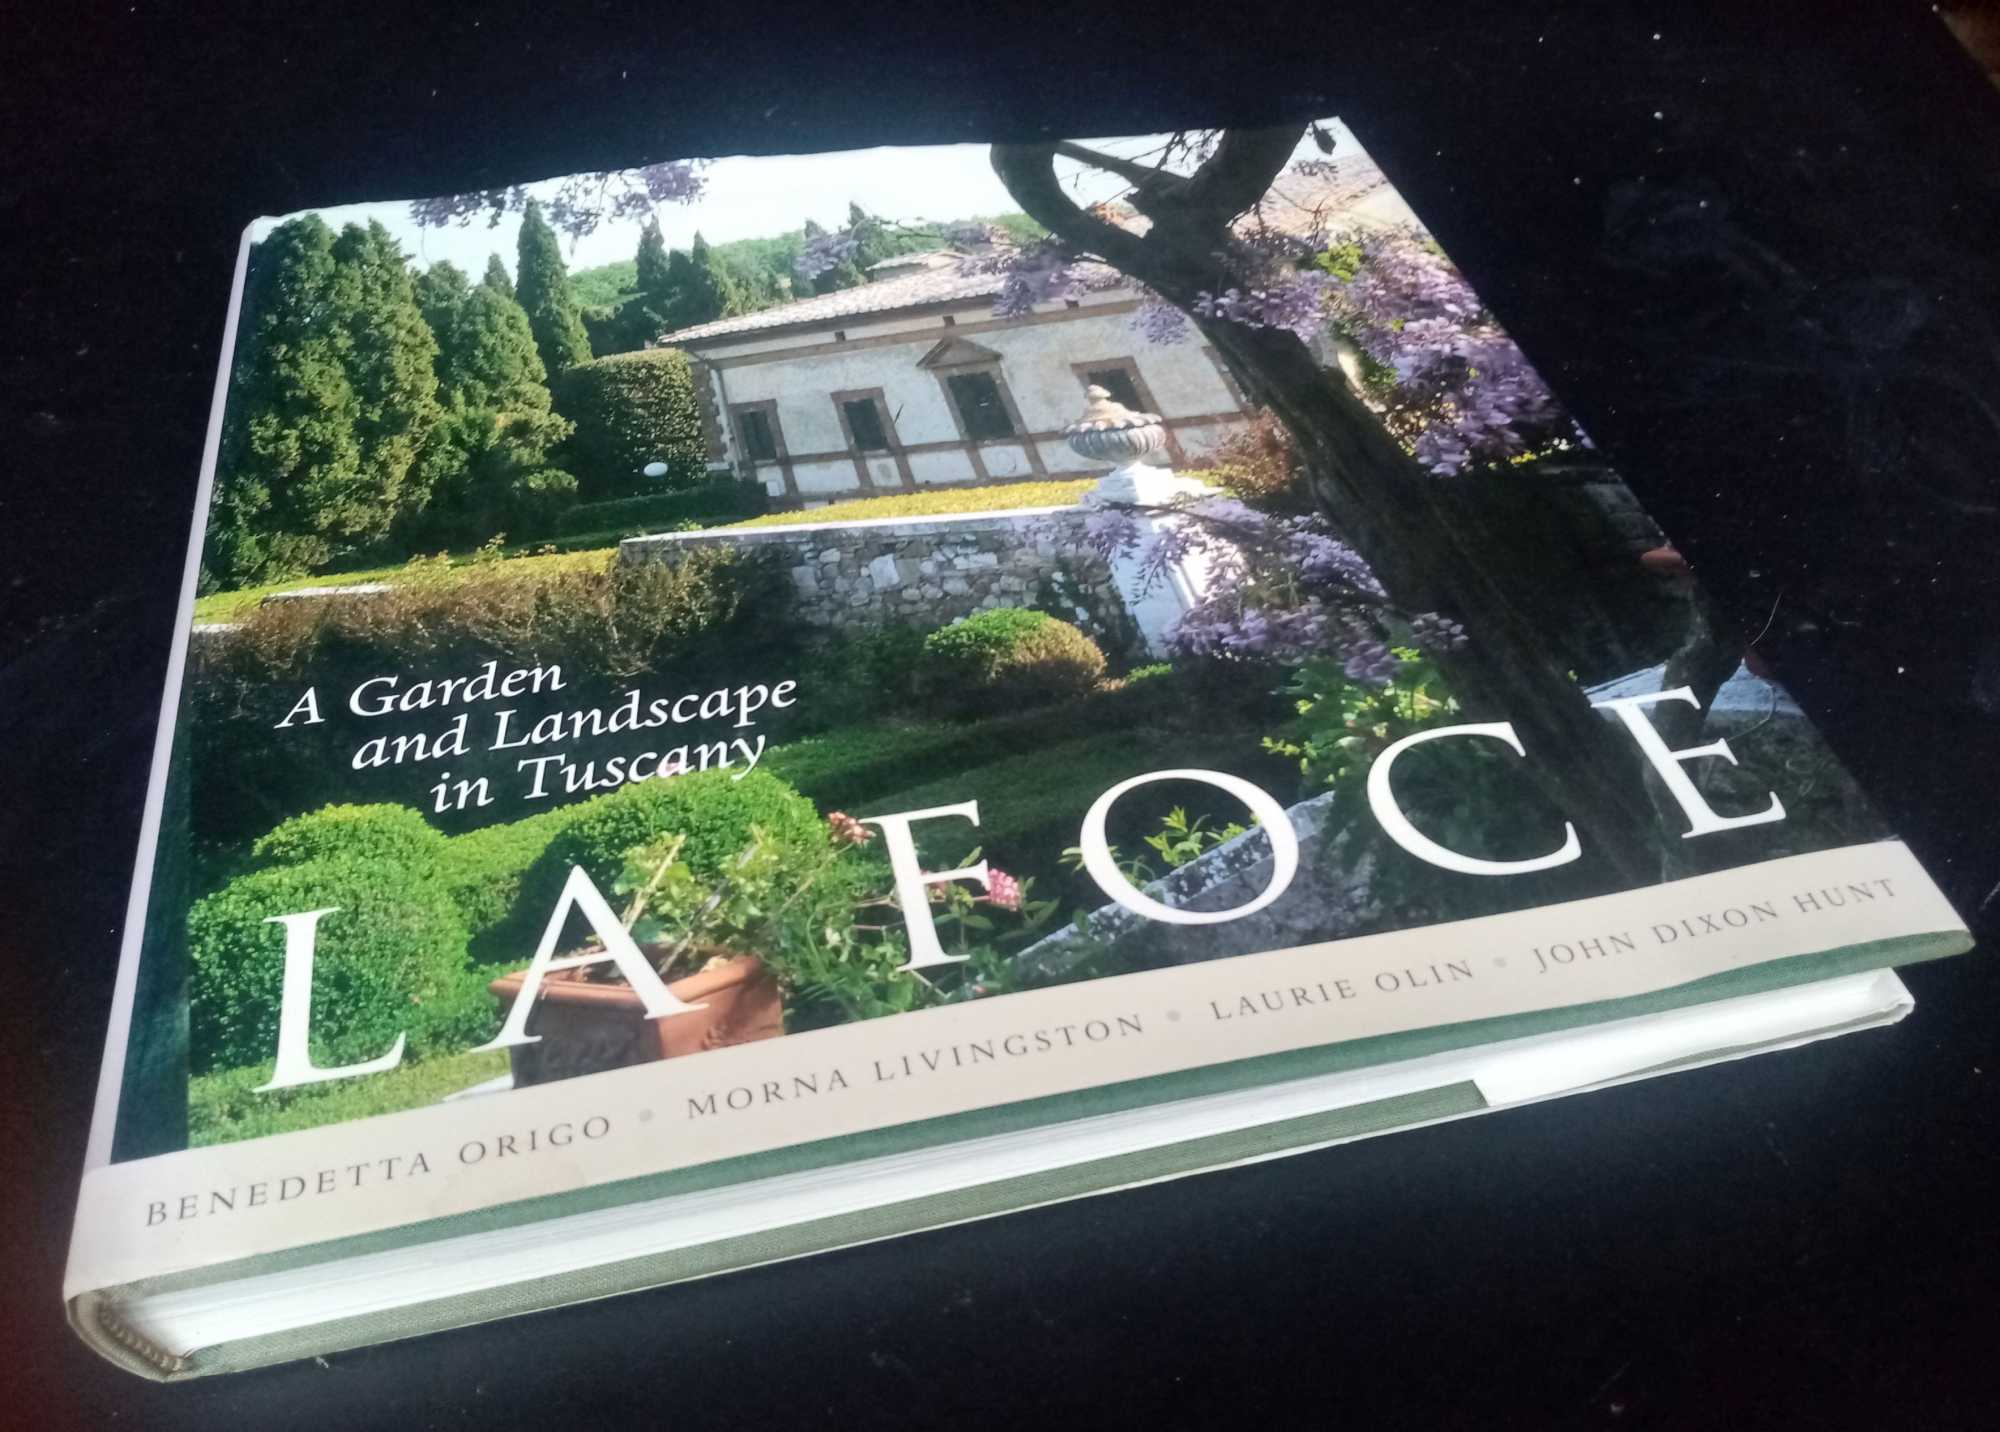 Benedetta Origo, et al. - La Foce: A Garden and Landscape in Tuscany